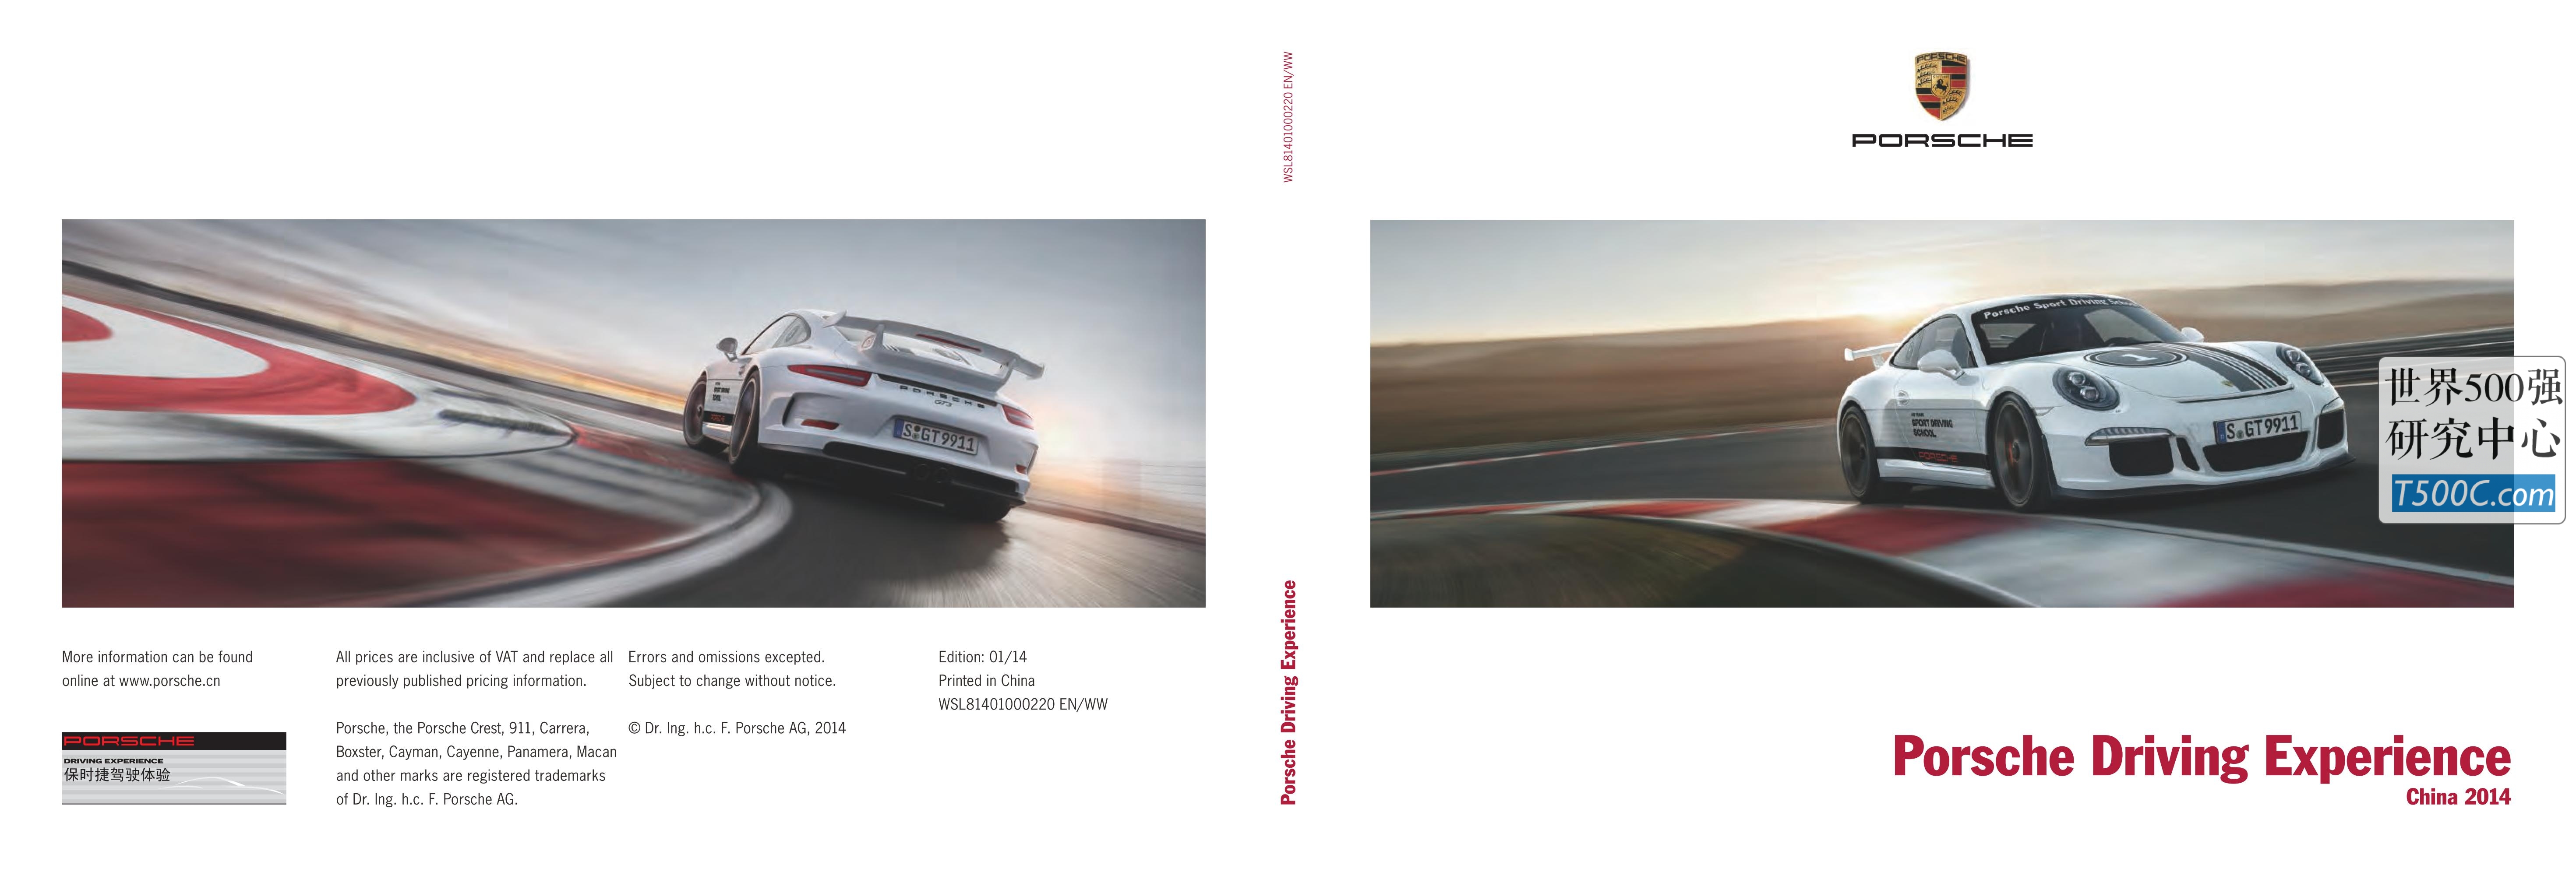 保时捷Porsche_见解宣传册Brochure_T500C.com_Driving Experience.pdf